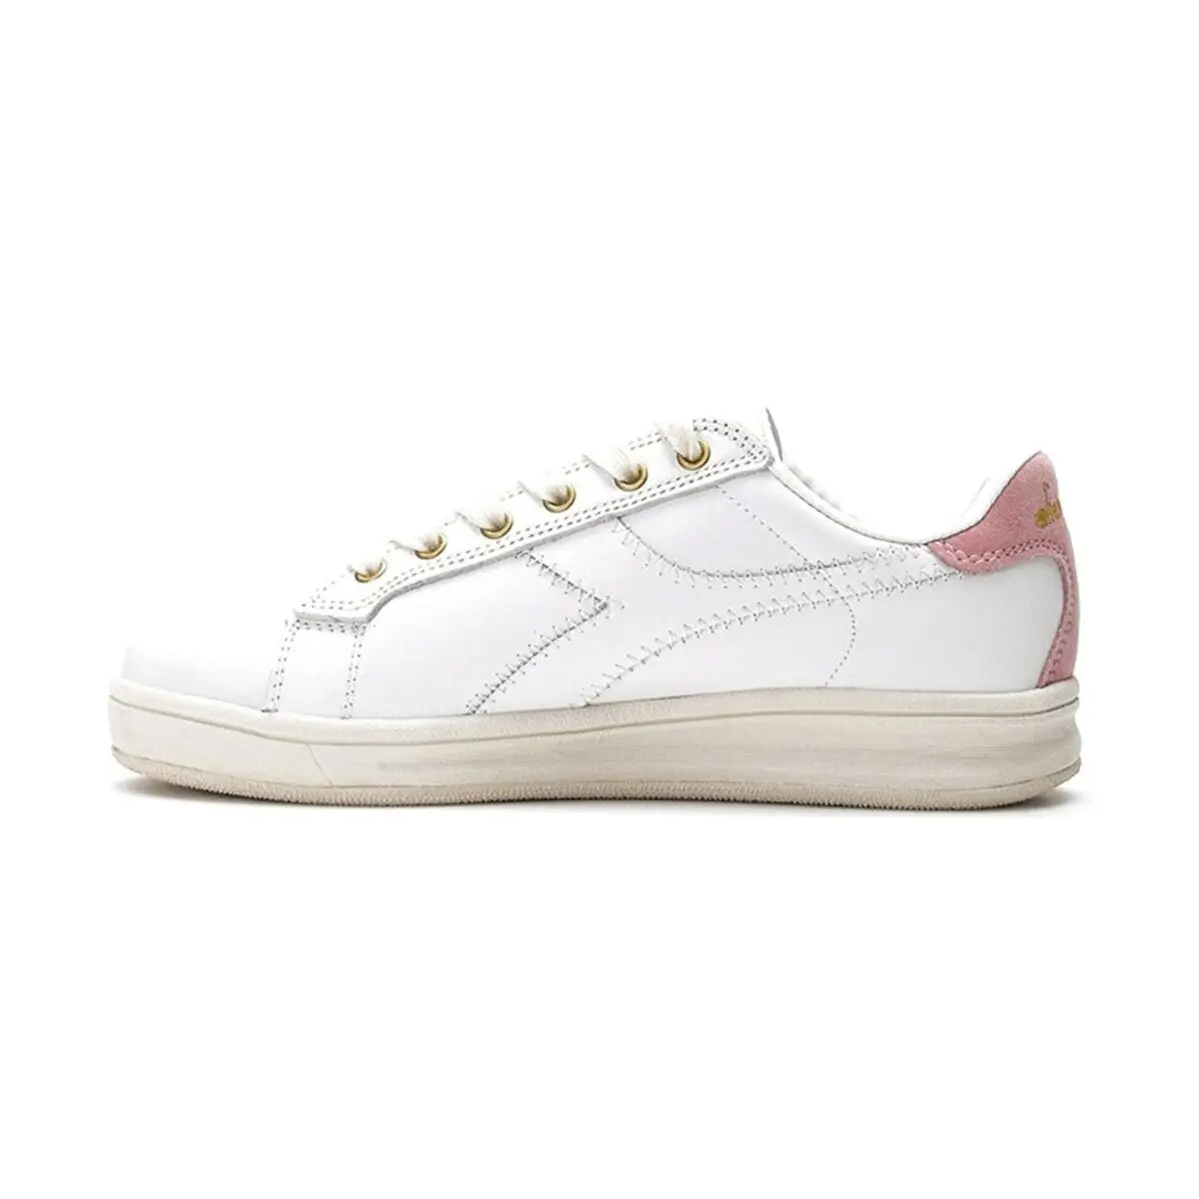 Diadora Martin Premiumn Beyaz Pembe Kadın Günlük Ayakkabı - 174349-C8007